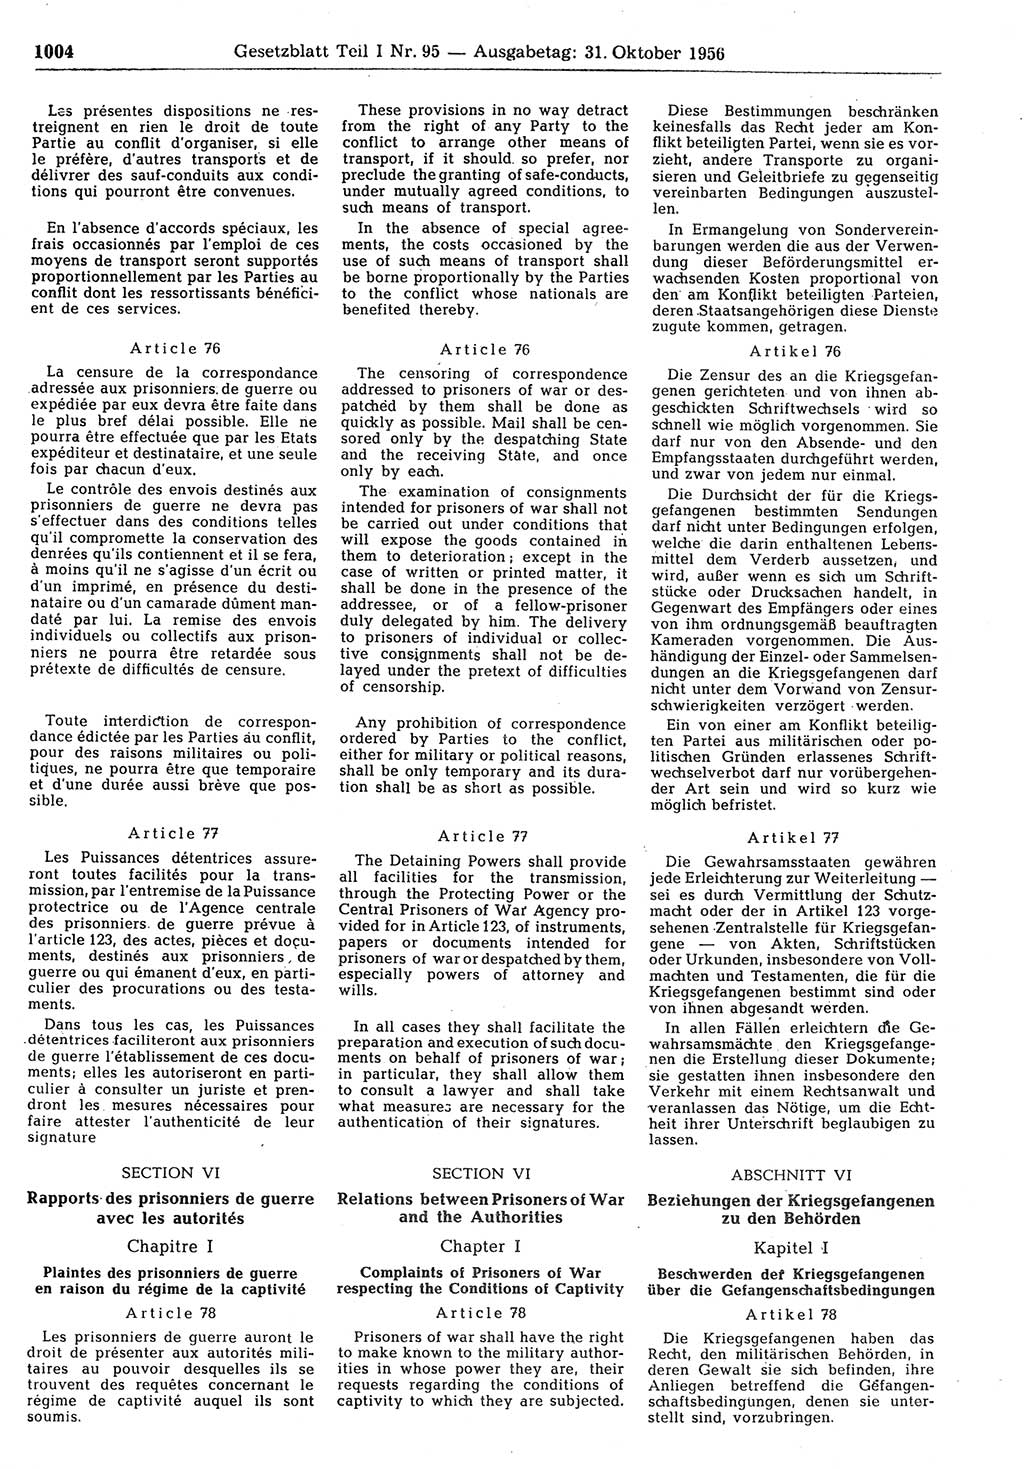 Gesetzblatt (GBl.) der Deutschen Demokratischen Republik (DDR) Teil Ⅰ 1956, Seite 1004 (GBl. DDR Ⅰ 1956, S. 1004)